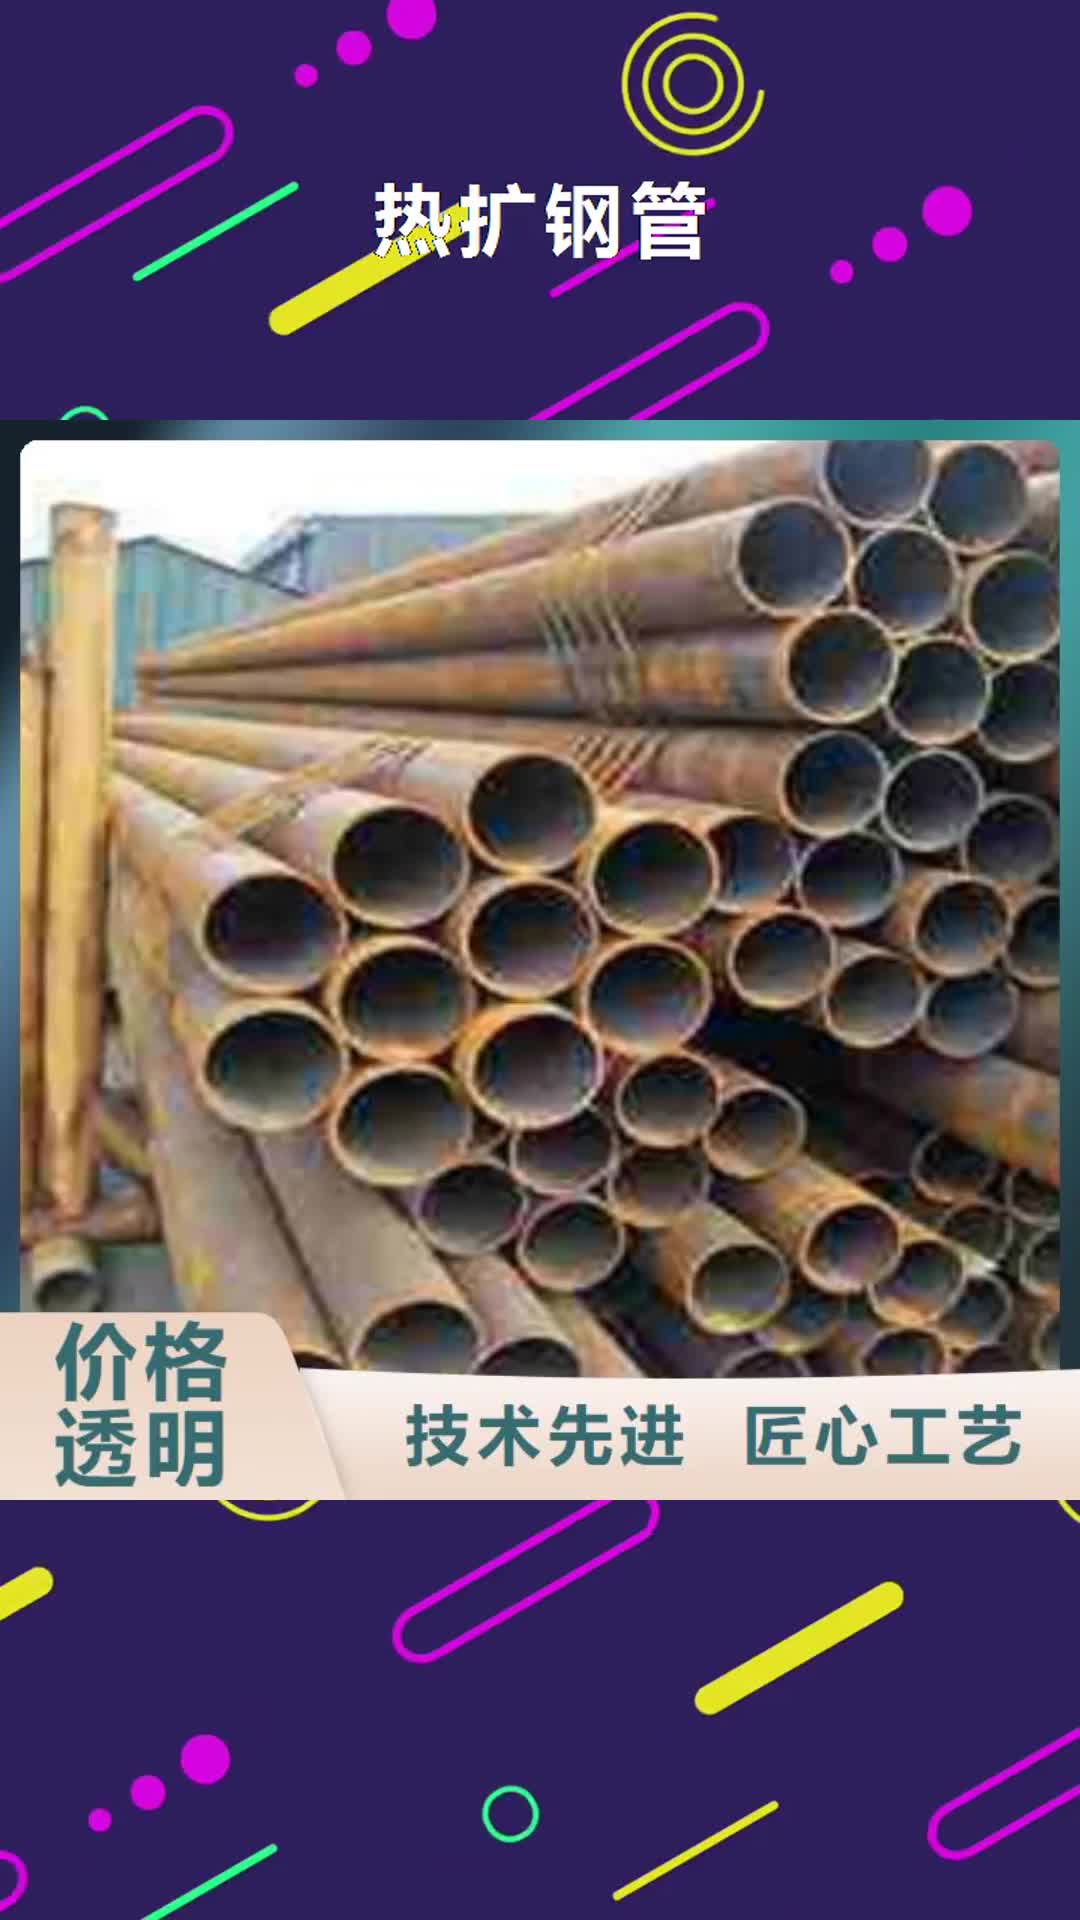 葫芦岛 热扩钢管【螺旋钢管】专业生产制造厂